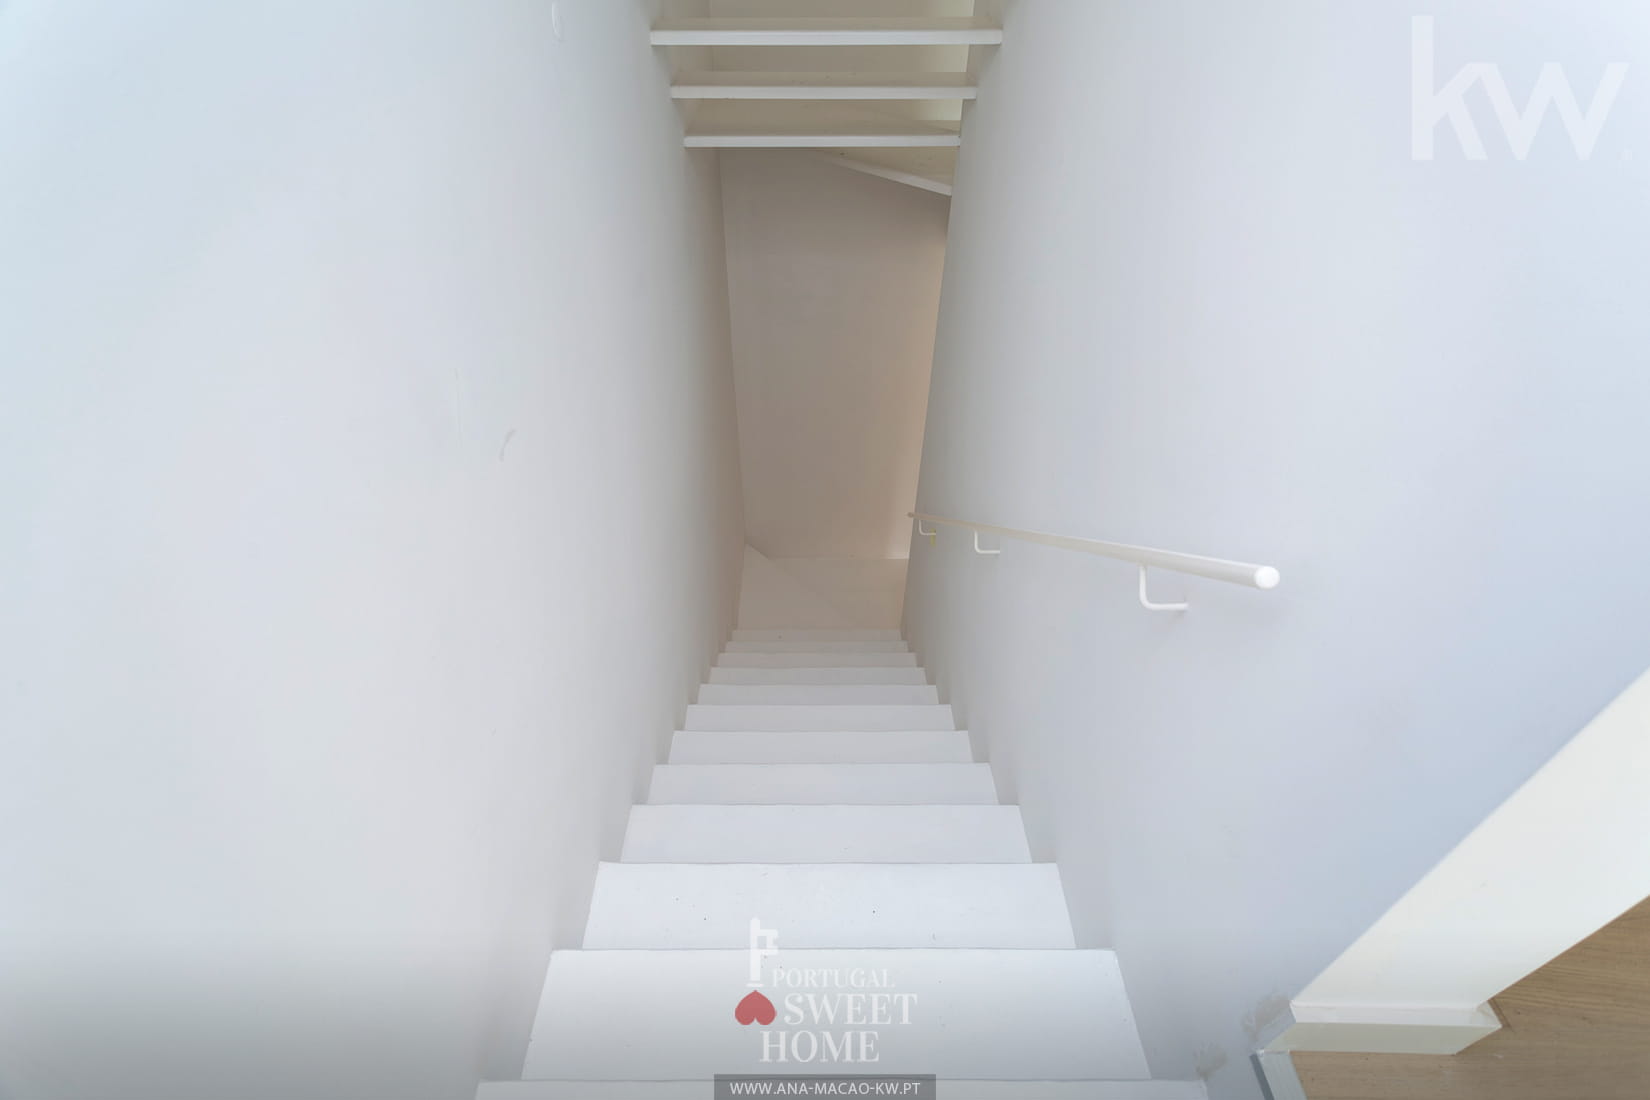 Escalier menant à l'étage inférieur